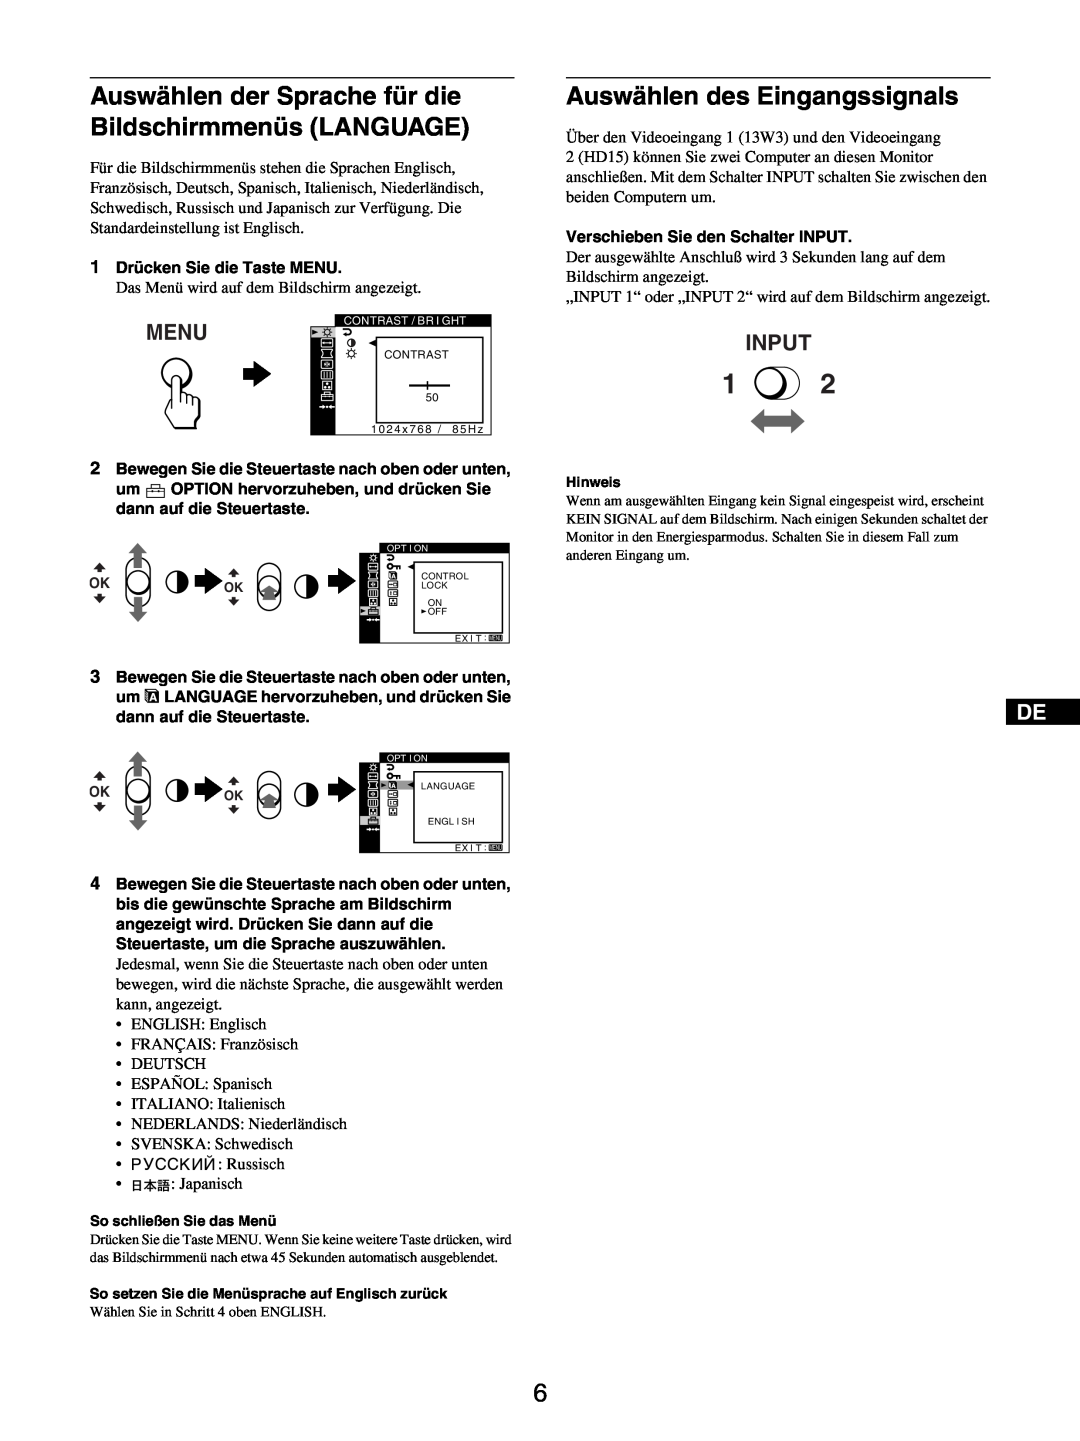 Sony GDM-5510 Auswählen des Eingangssignals, Auswählen der Sprache für die Bildschirmmenüs LANGUAGE, Menu, Input 